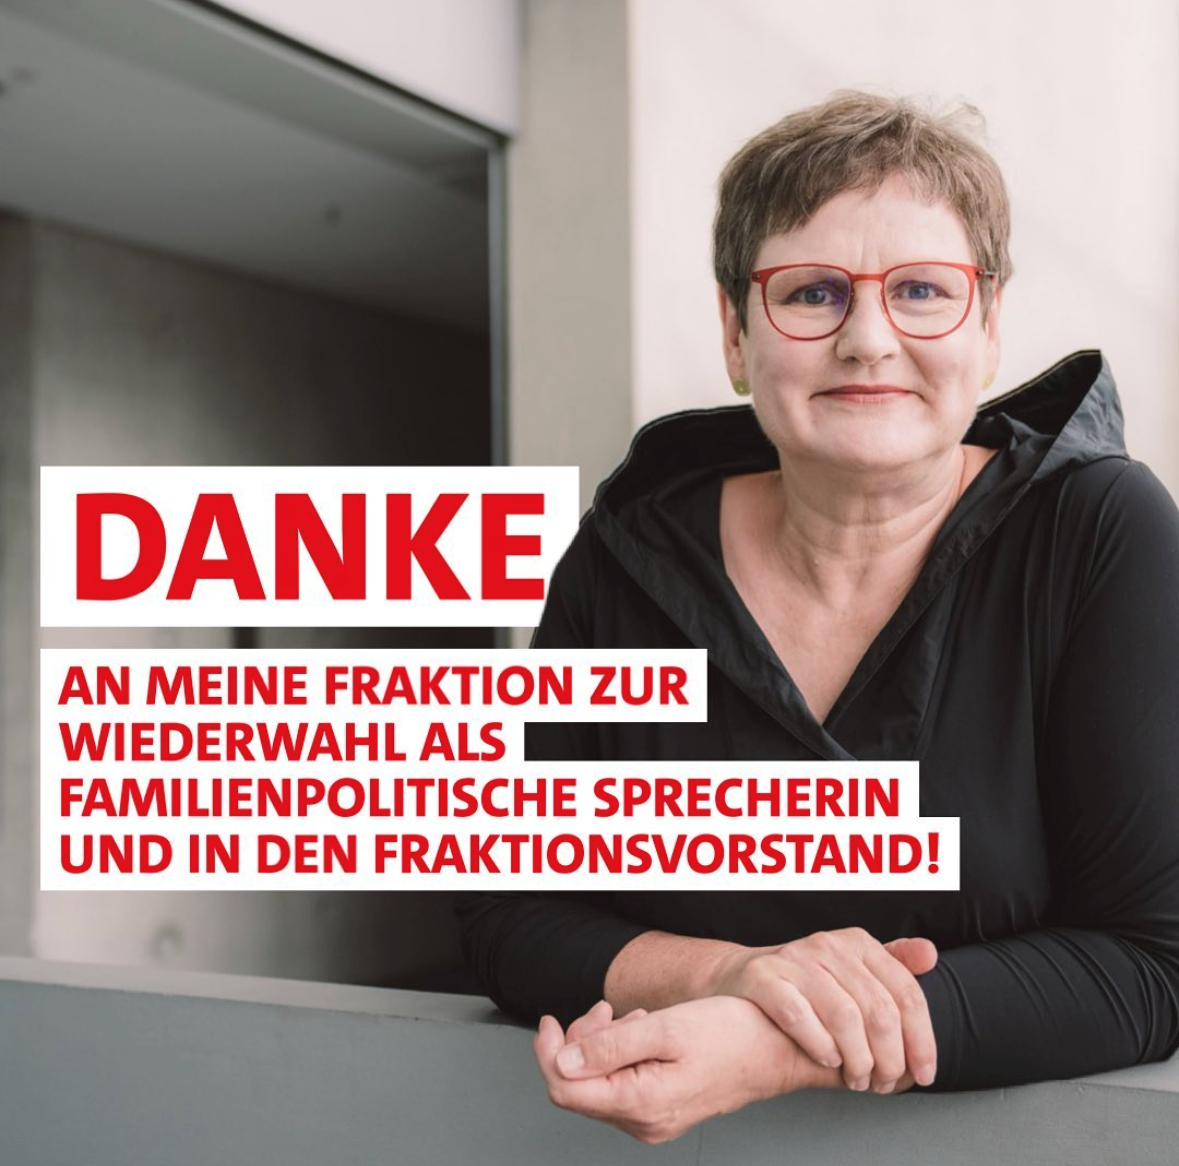 Leni Breymaier MdB nach der Wiederwahl zur familienpolitischen Sprecherin der SPD-Bundestagsfraktion und Fraktionsvorstand